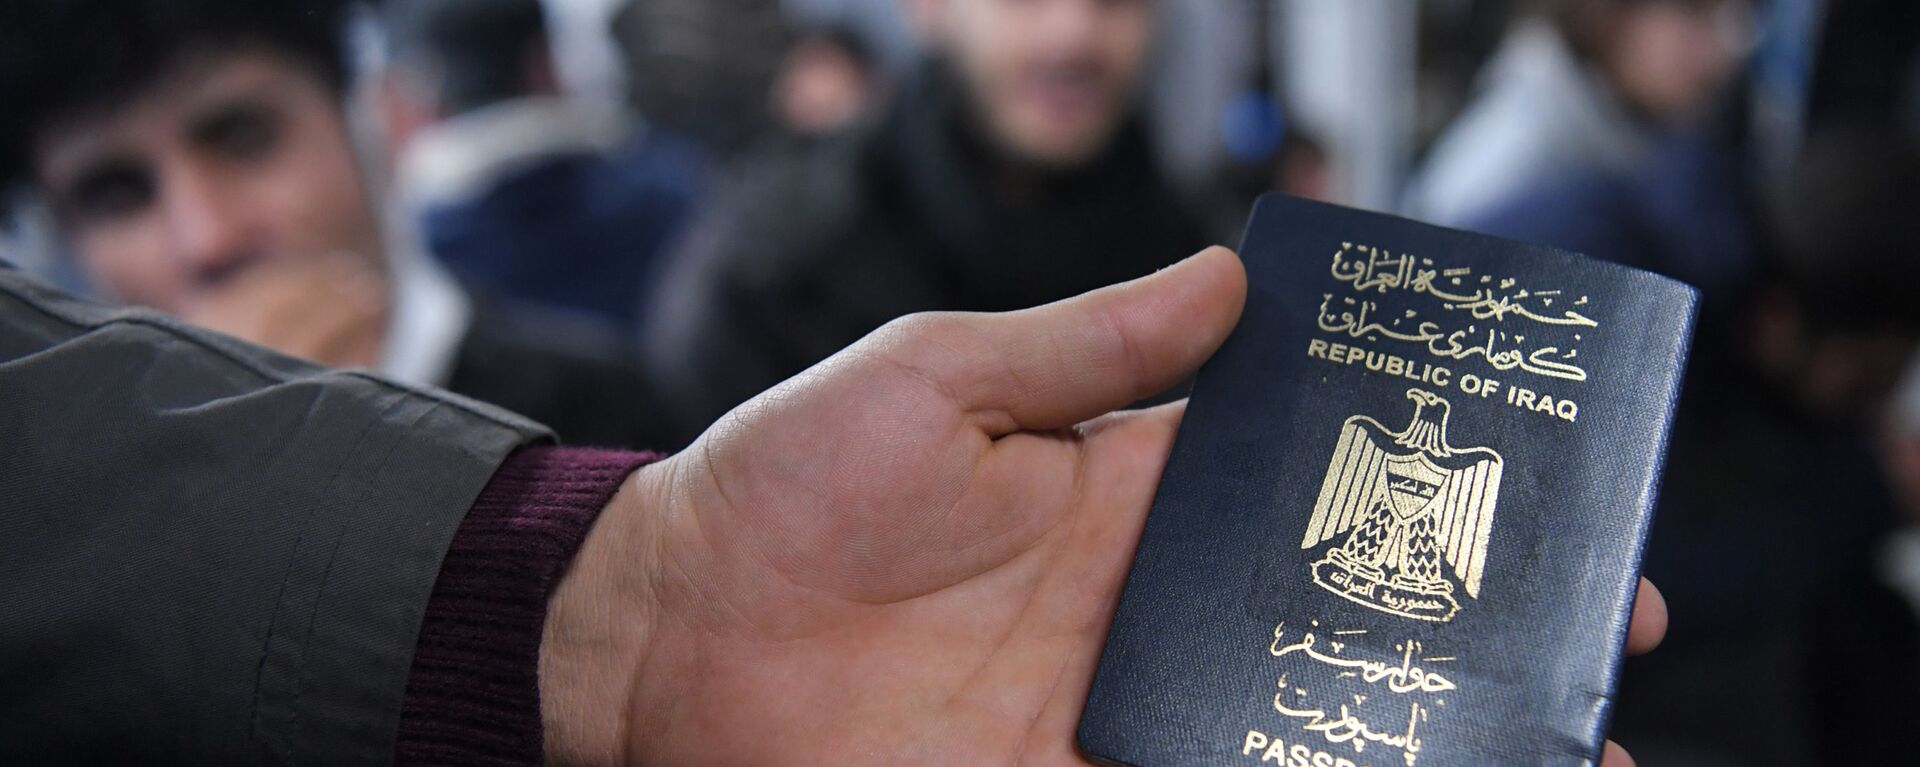 Иракский паспорт в руке одного из беженцев, ожидающих в международном аэропорту Минска вывозных рейсов авиакомпании Iraqi Airways - Sputnik Беларусь, 1920, 28.11.2021